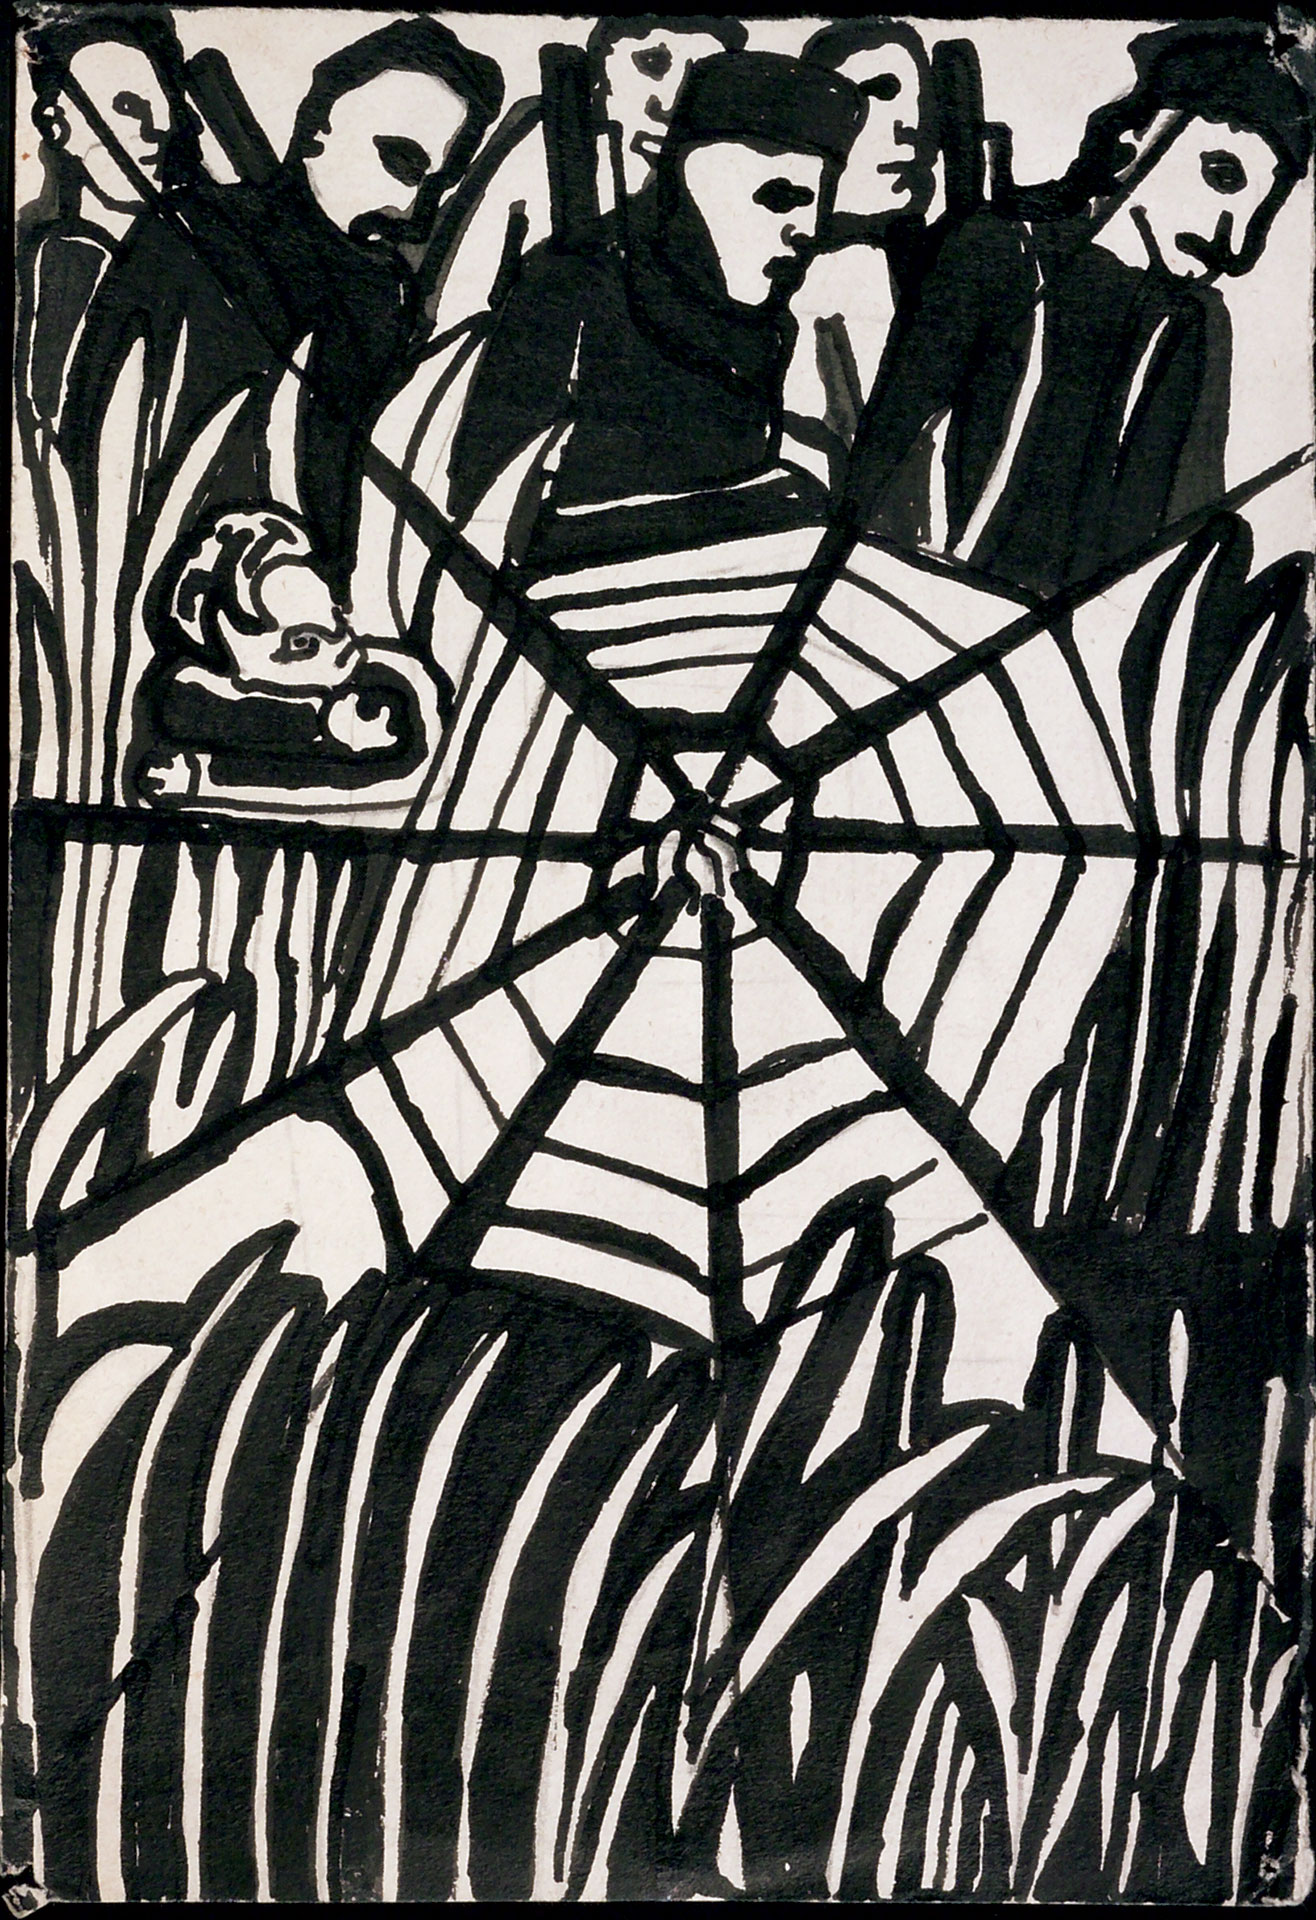 La tela di ragno, illustrazione in bianco e nero di Valeria D’Arbela